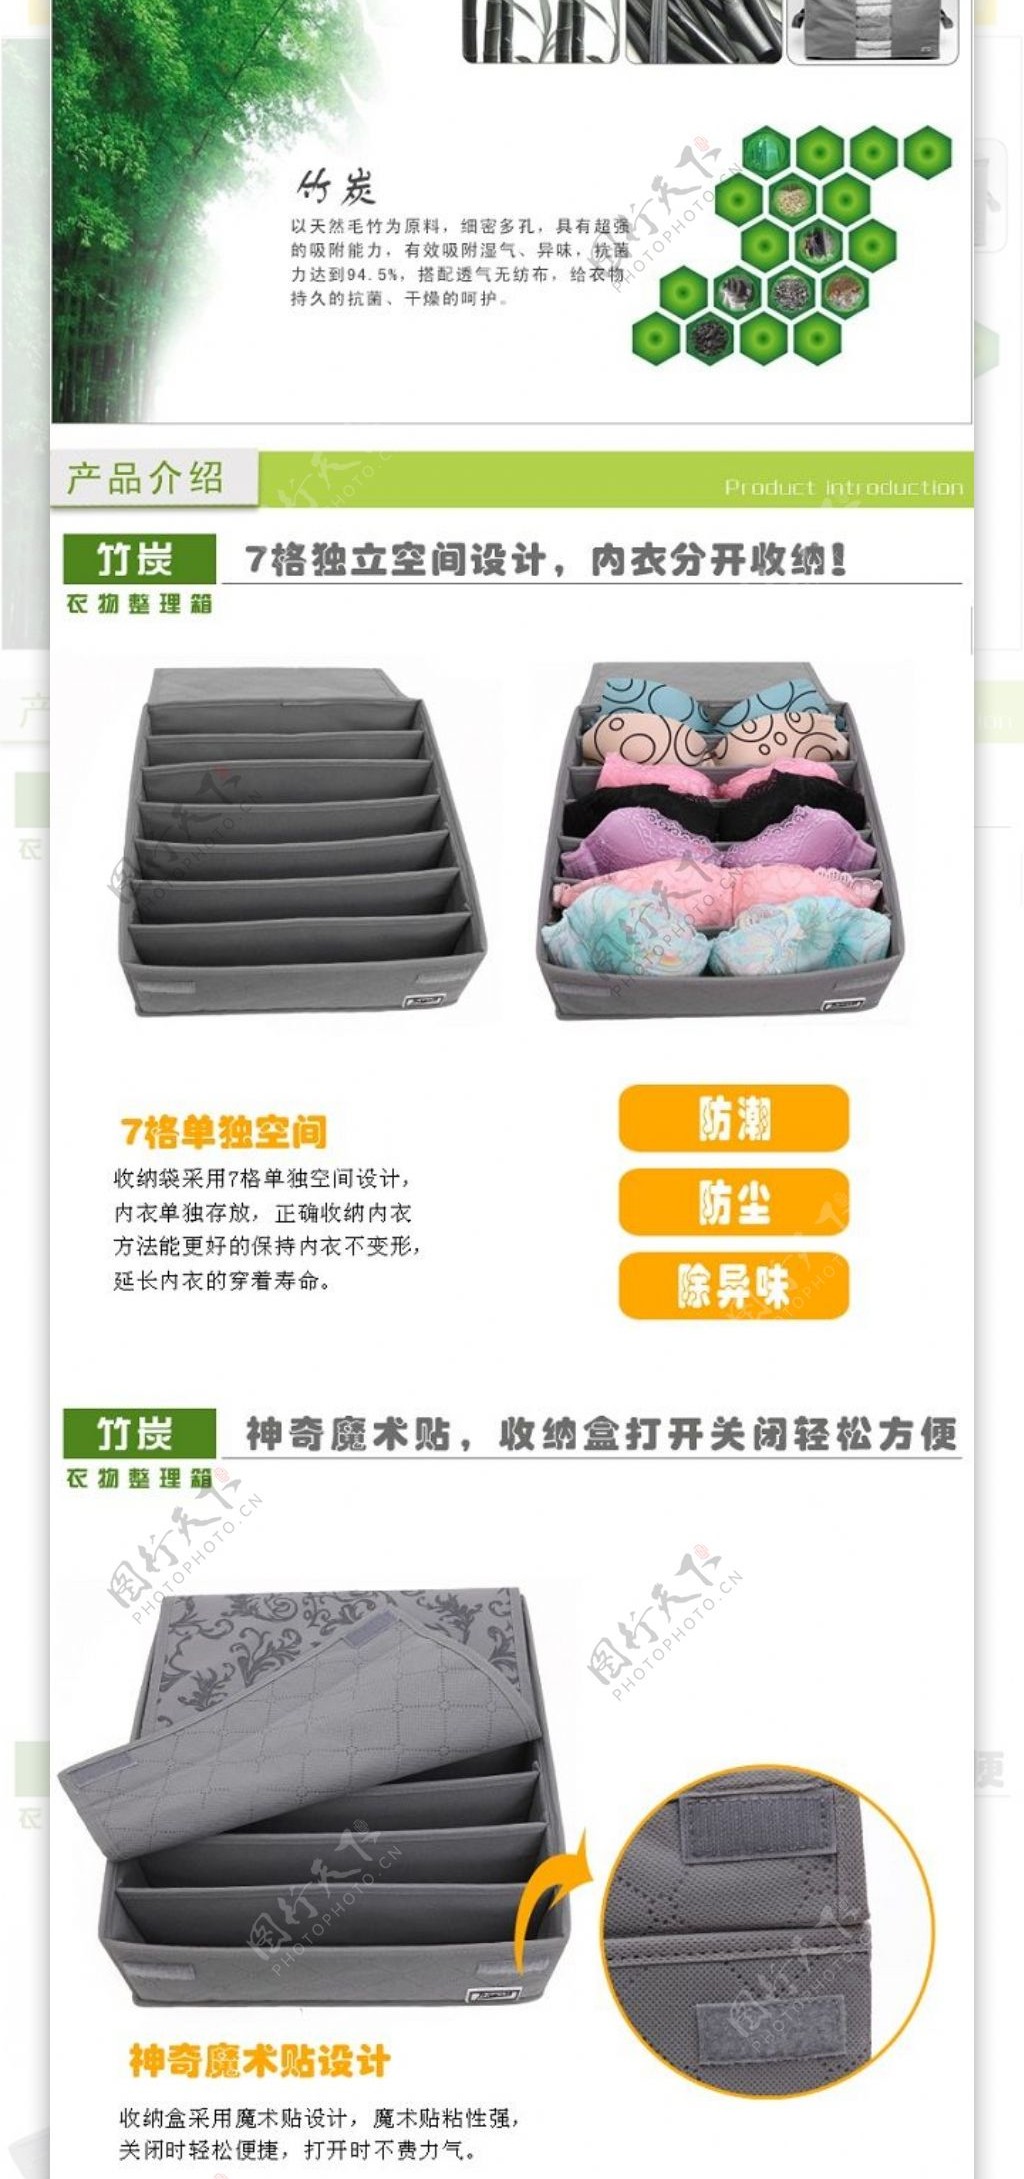 竹炭7格胸衣收纳盒繁体版产品描述页